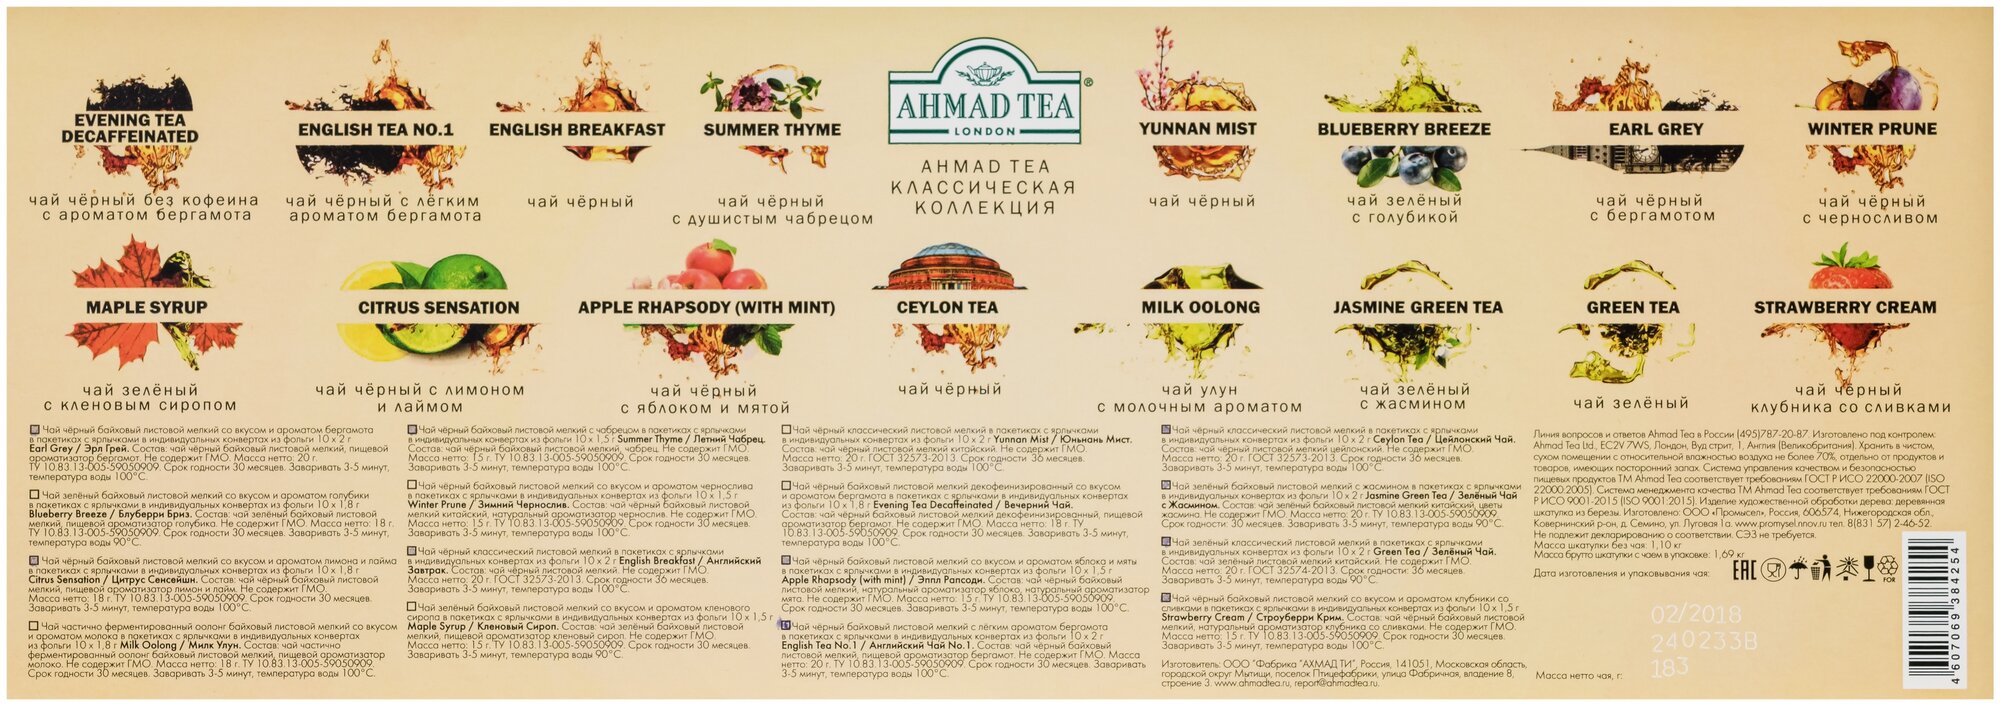 Чай "Ahmad Tea", "Коллекция Ahmad Tea", в шкатулке из дерева, пакетики в конвертах из фольги - фотография № 5